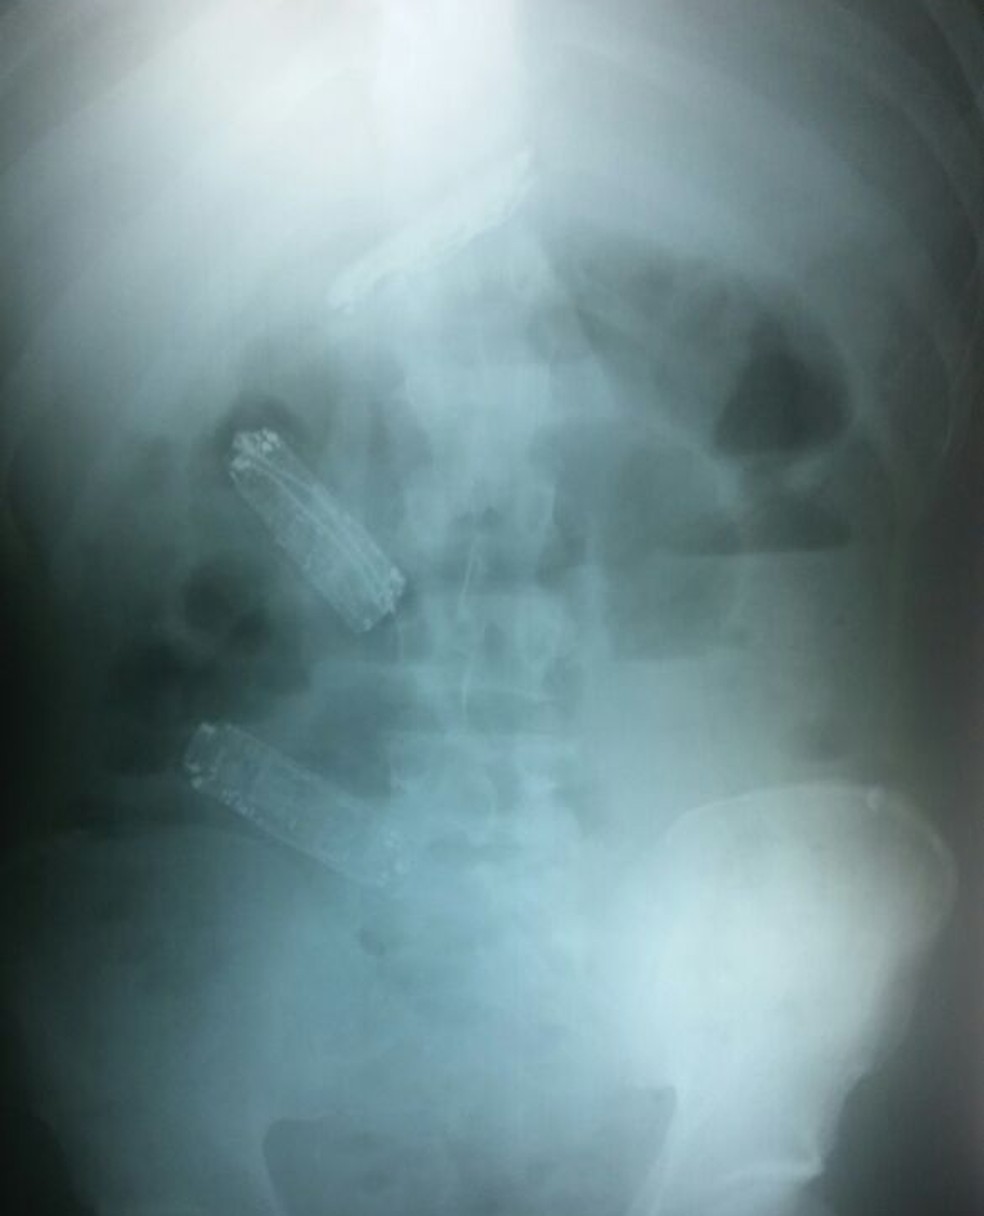 Preso tinha três celulares no estômago (Foto: SAP/Cedida)